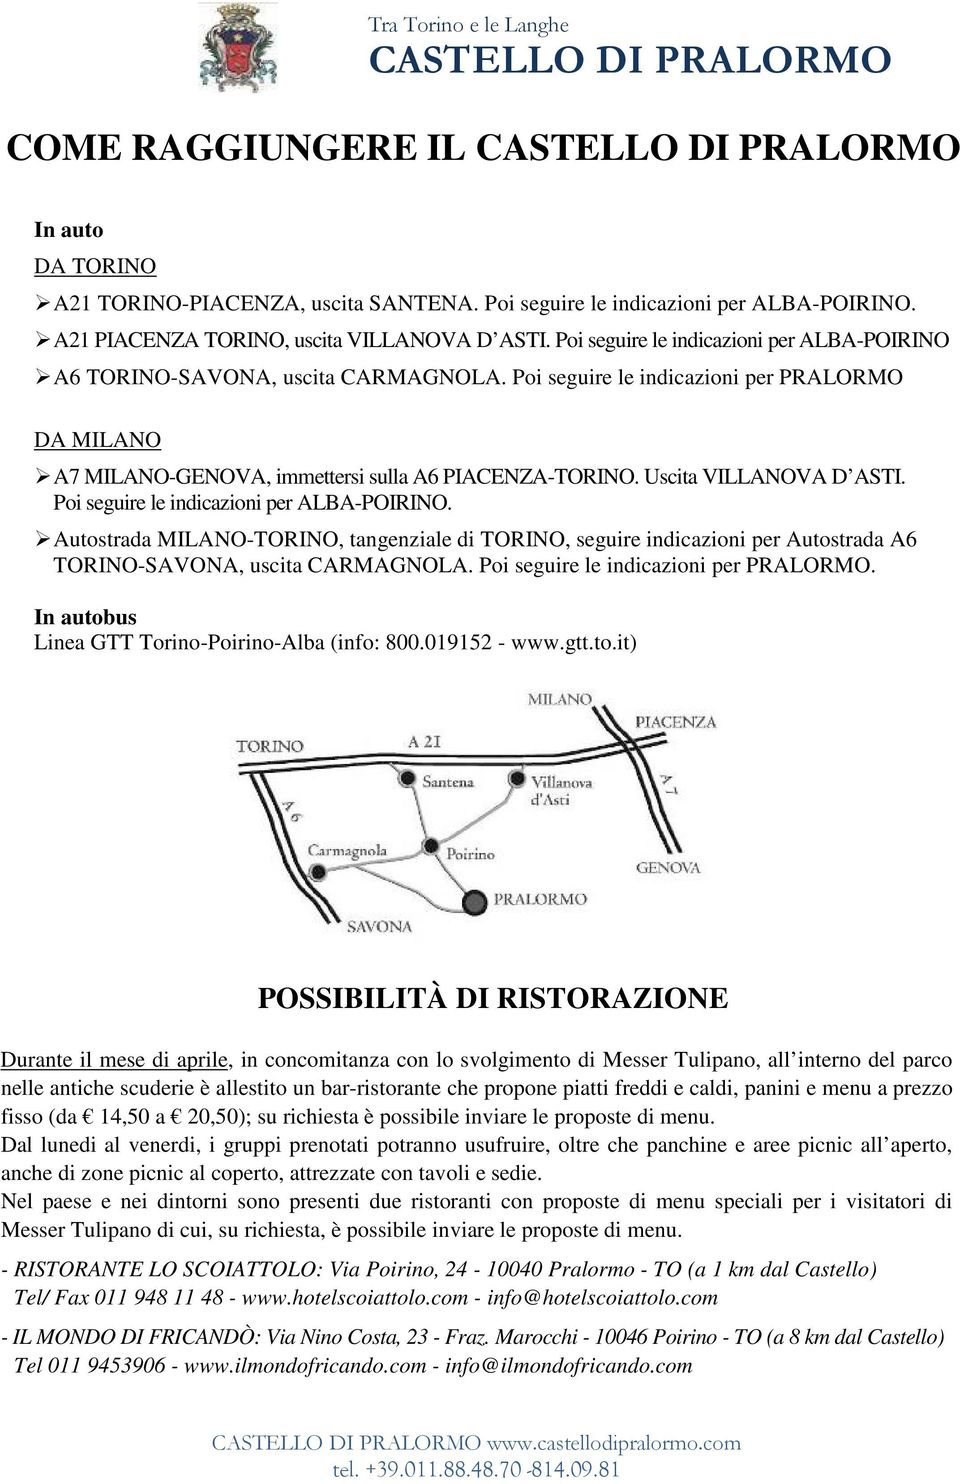 Uscita VILLANOVA D ASTI. Poi seguire le indicazioni per ALBA-POIRINO. Autostrada MILANO-TORINO, tangenziale di TORINO, seguire indicazioni per Autostrada A6 TORINO-SAVONA, uscita CARMAGNOLA.